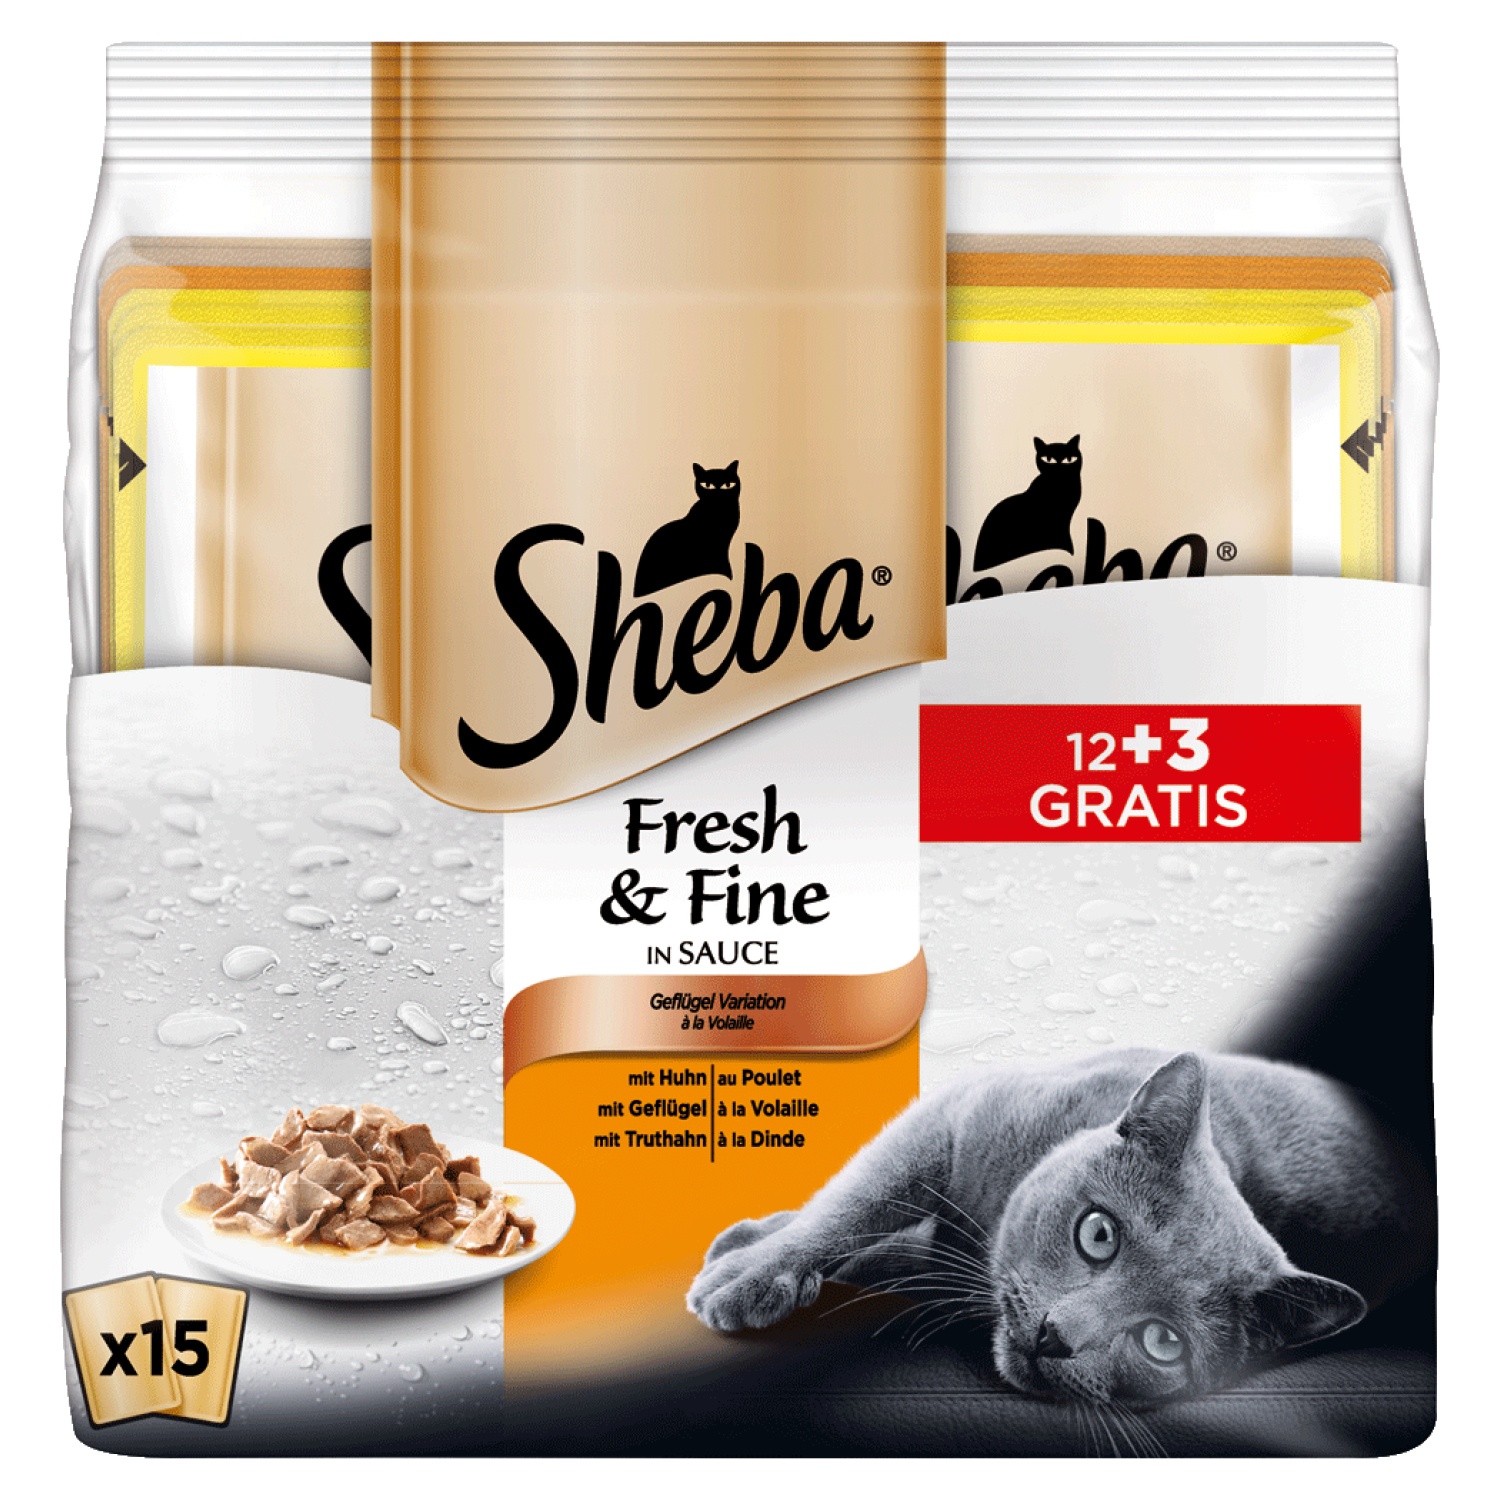 Sheba® Fresh & Fine in Sauce 750g